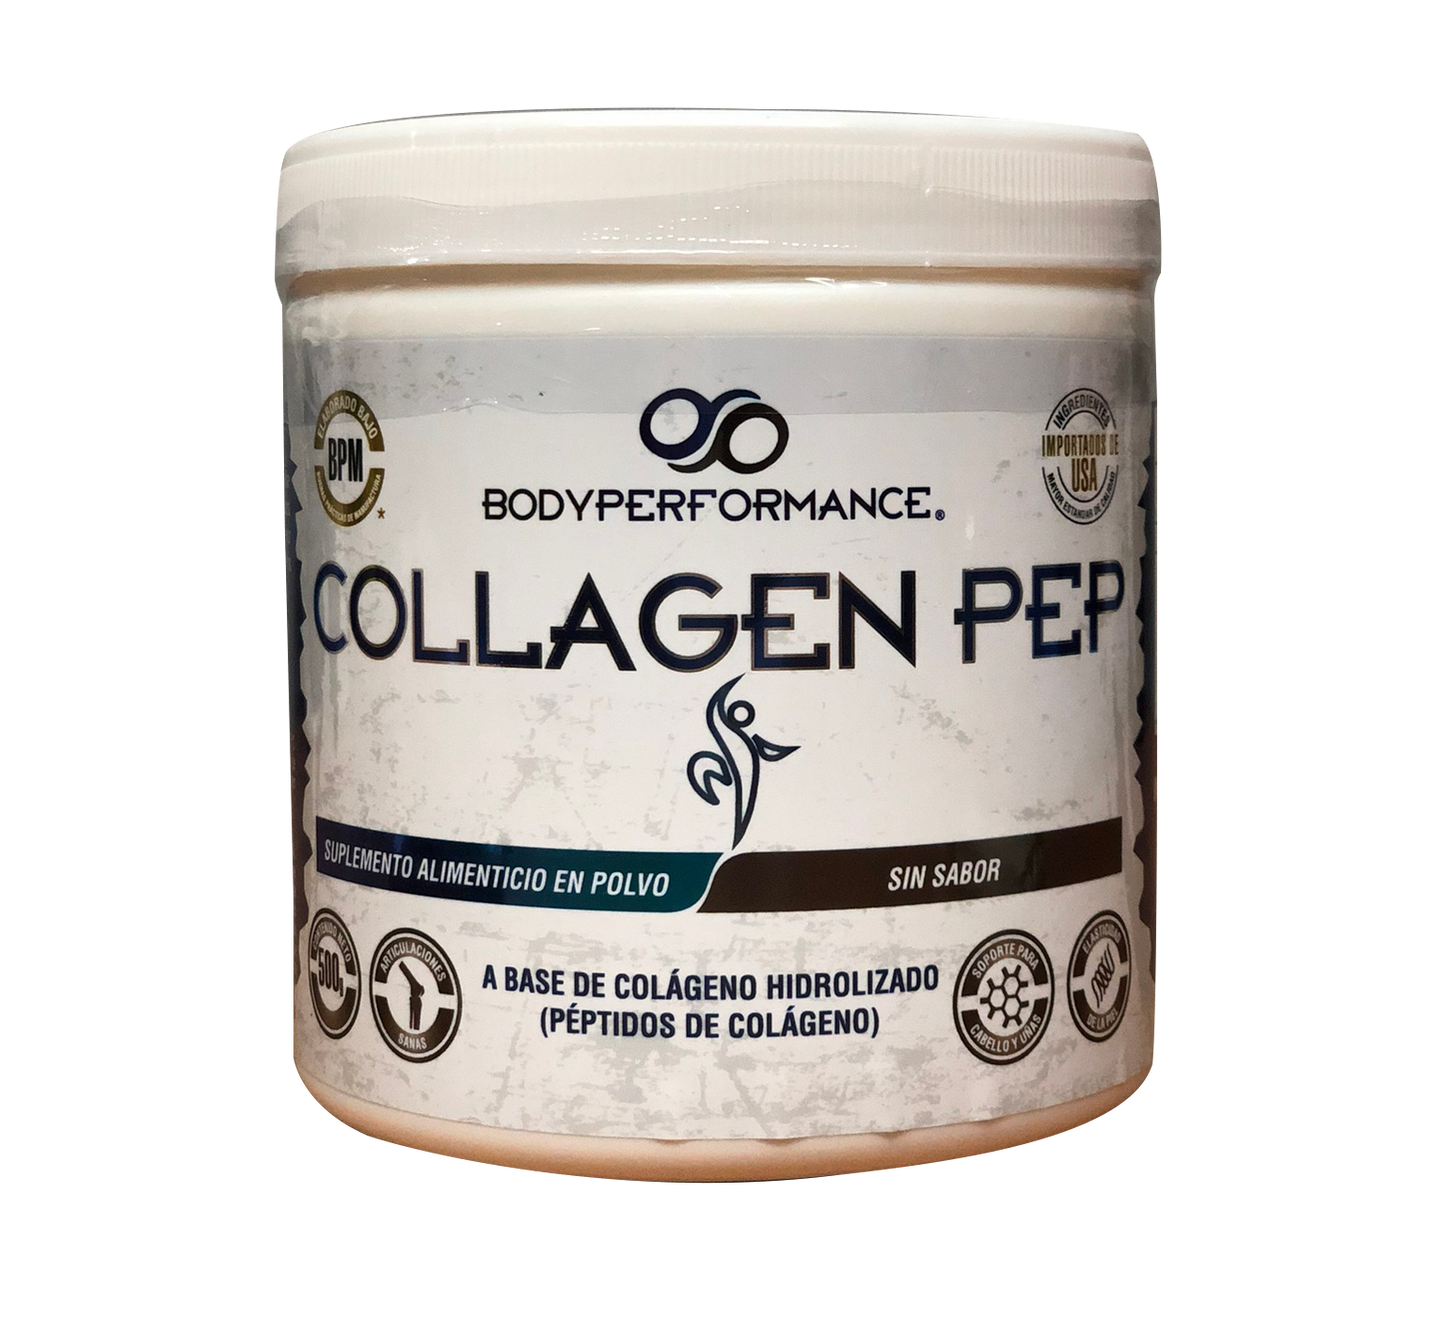 Collagen PEP 500g